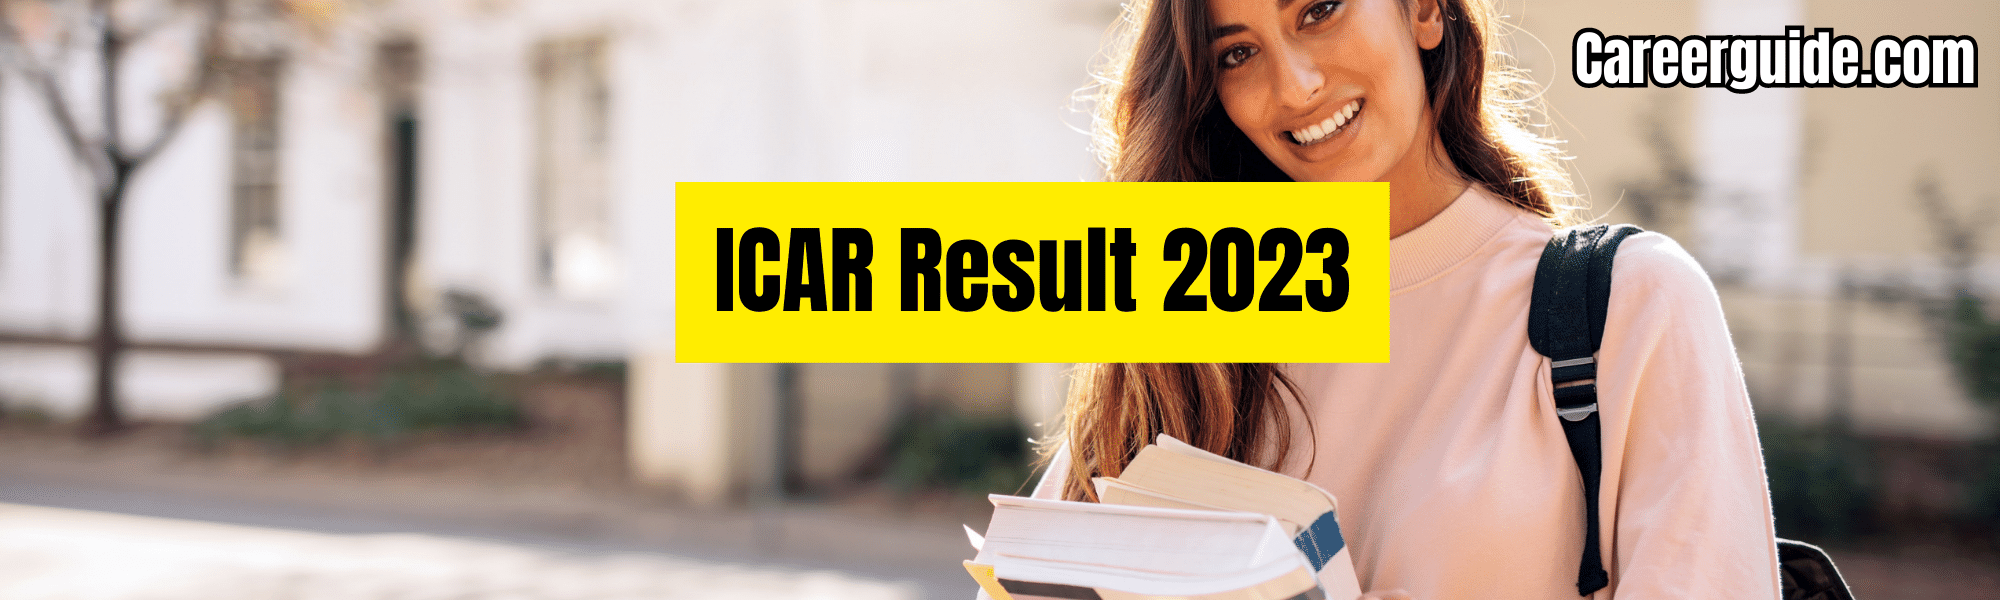 ICAR Result 2023-careerguide.com